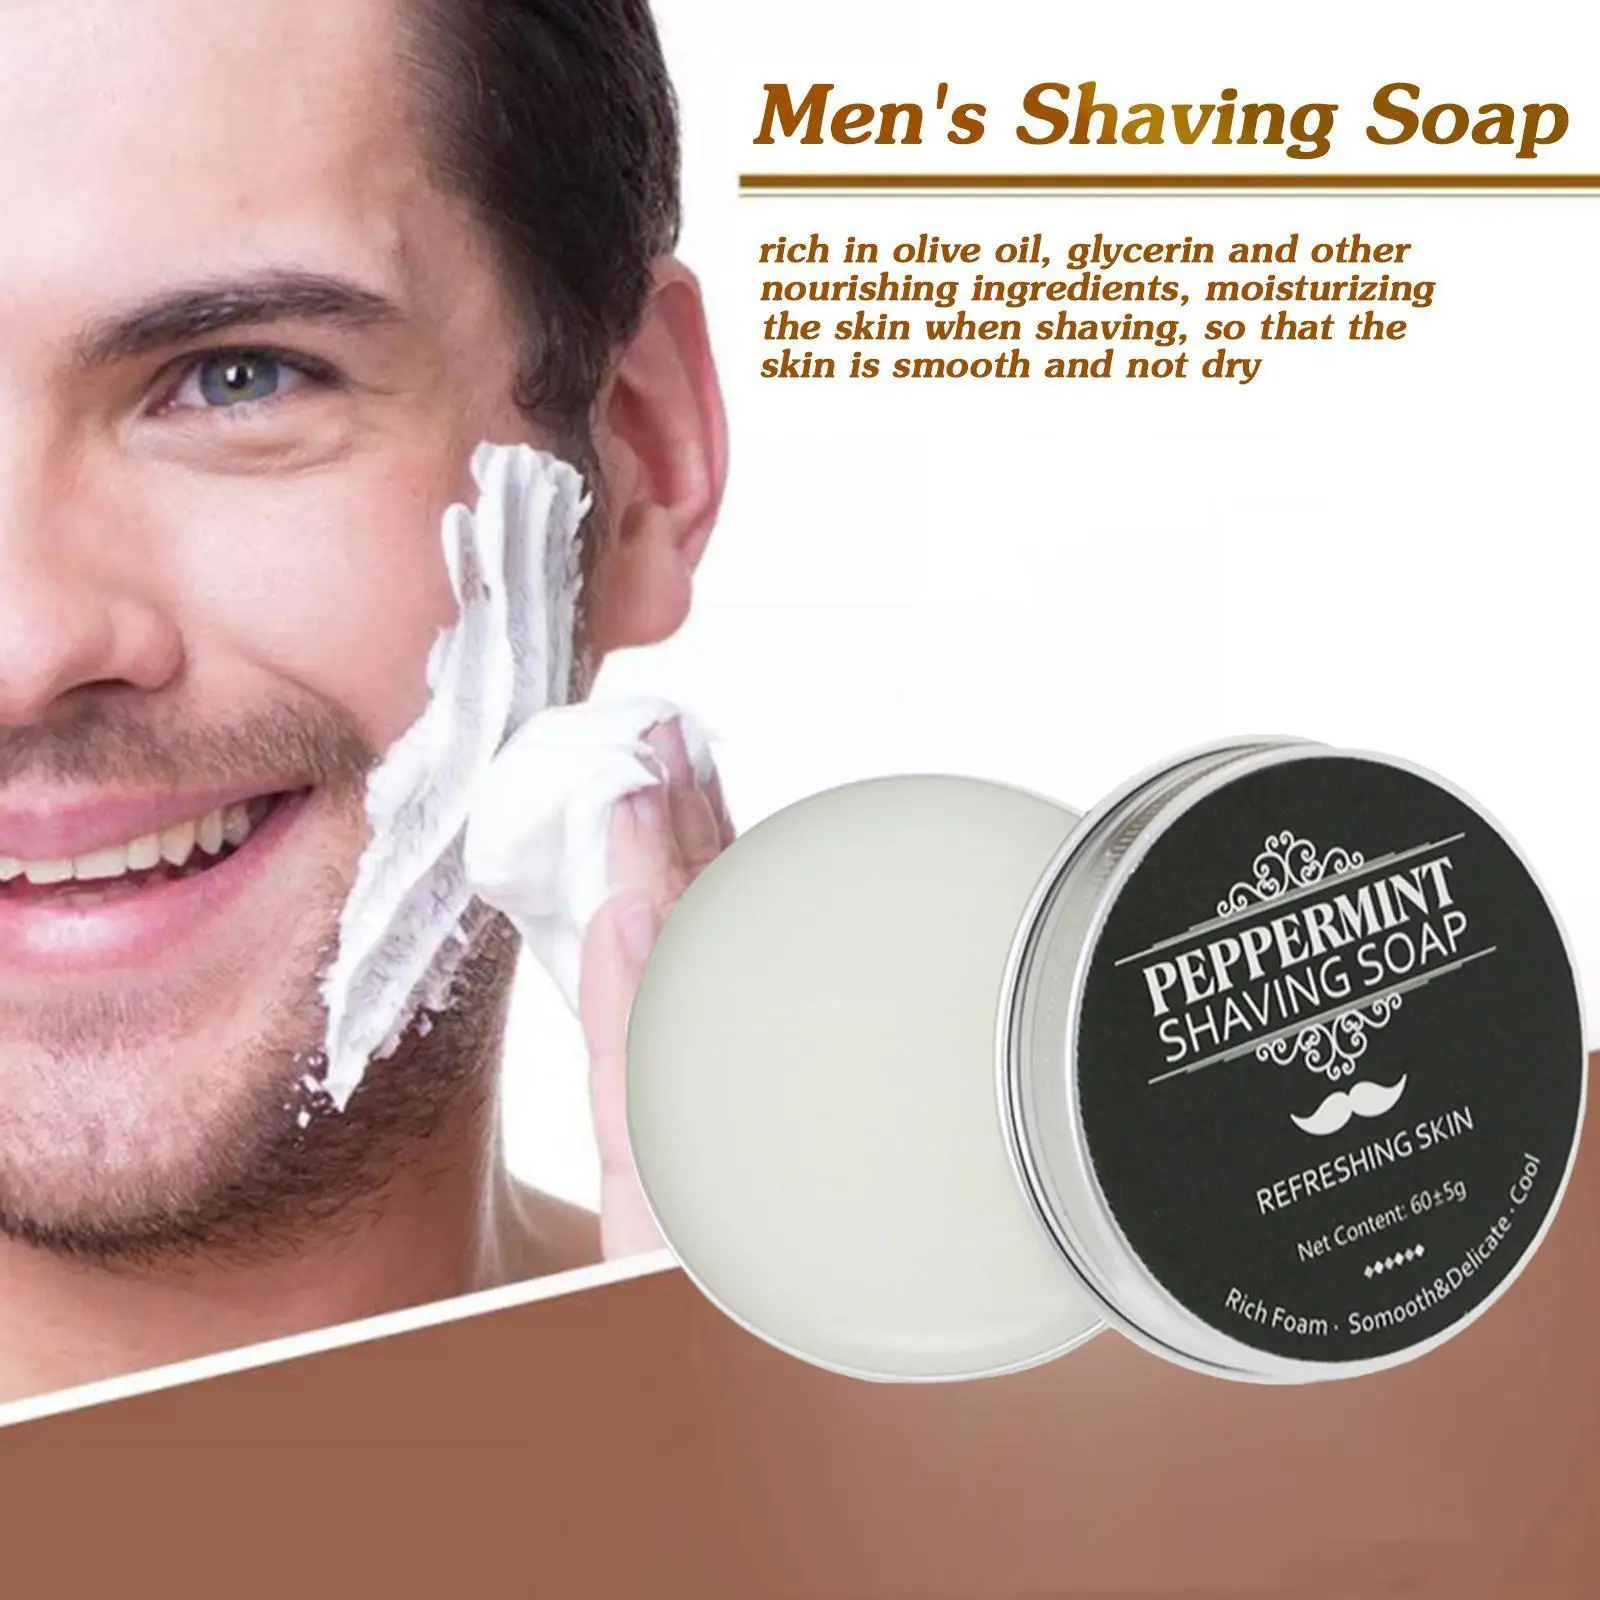 

Мужское мыло для бритья с мятным ароматом, 60 г